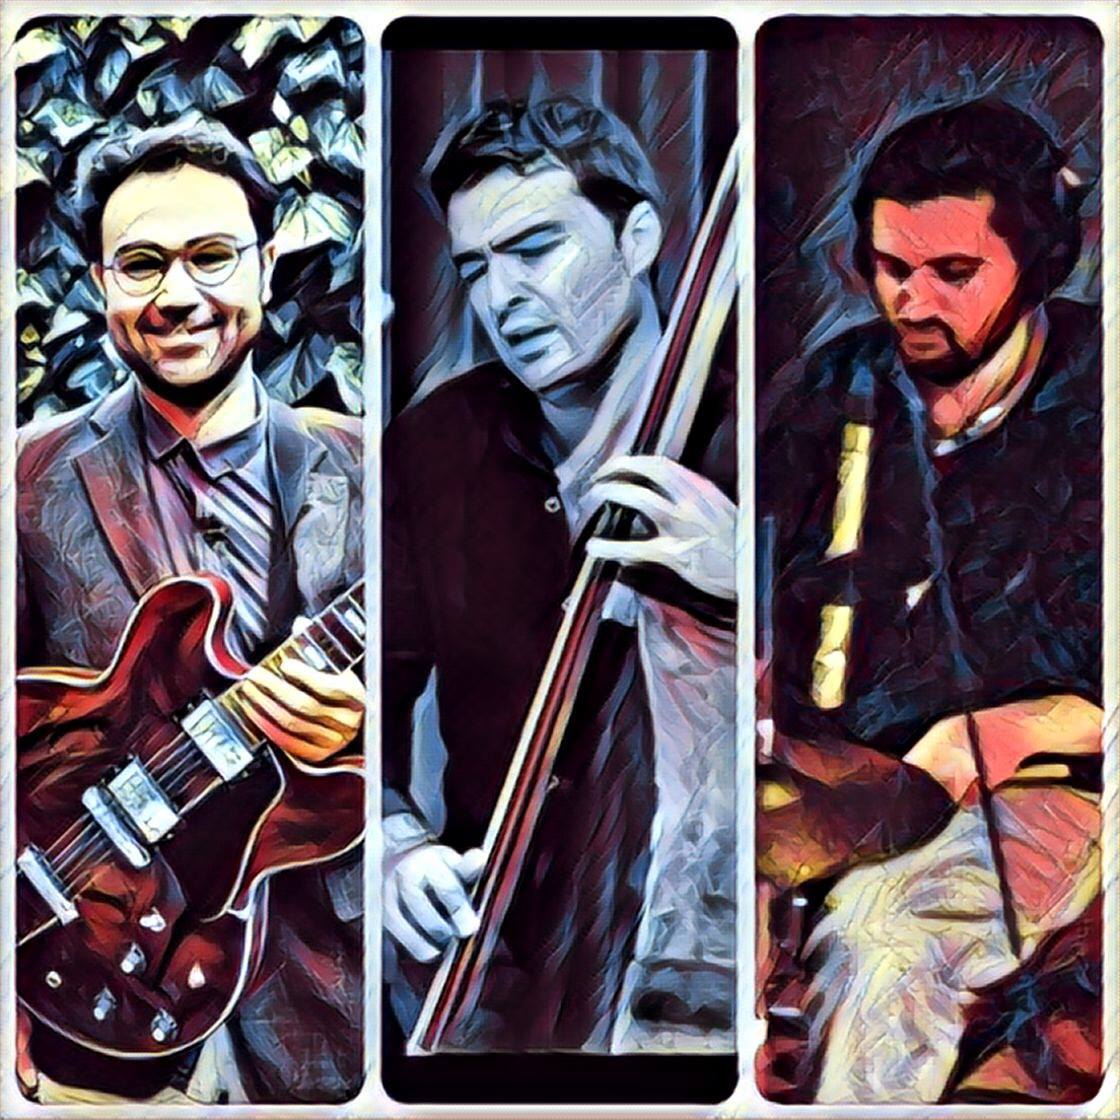 Barış Arslan Trio